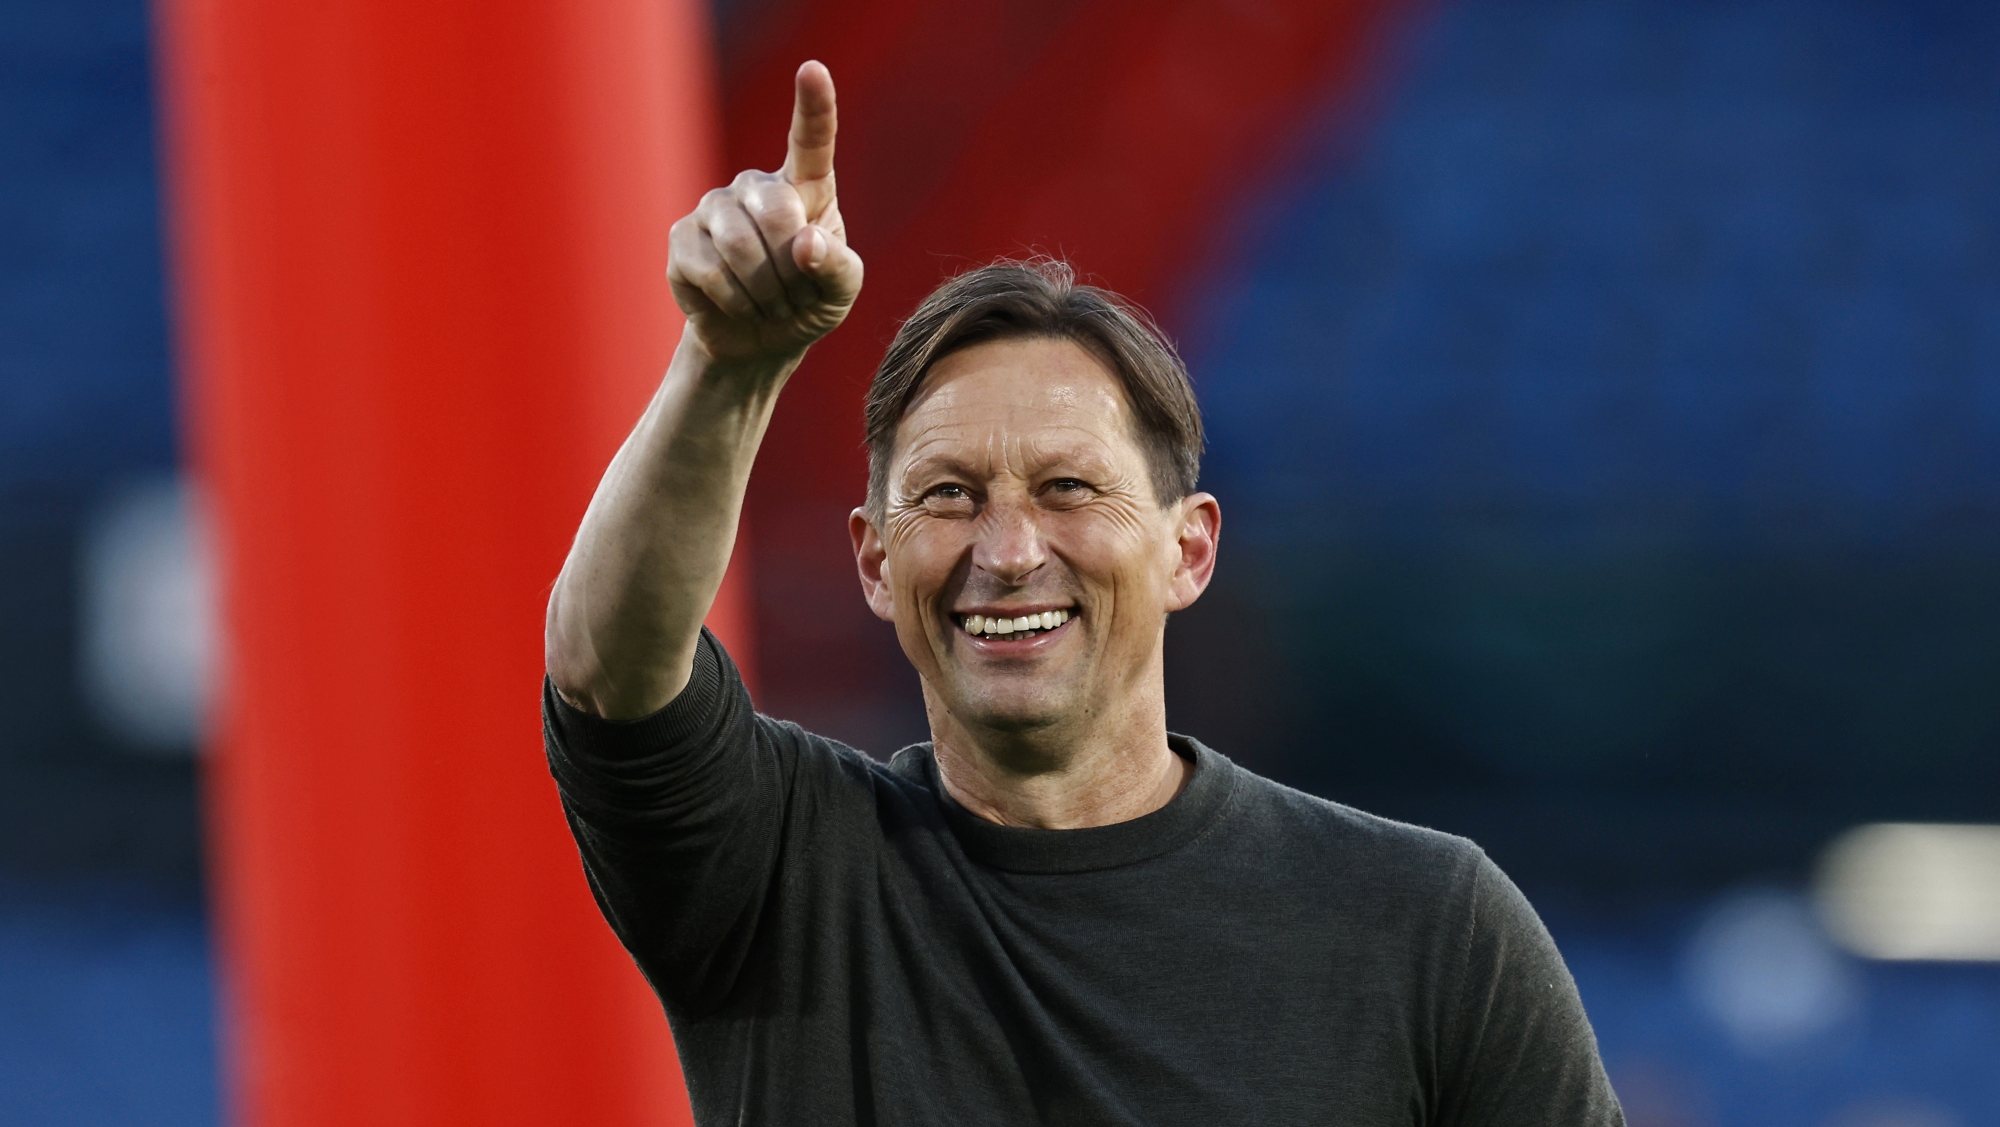 Roger Schmidt ganhou esta temporada a Supertaça e a Taça dos Países Baixos frente ao Ajax, estando a quatro pontos da equipa de Amesterdão na Liga